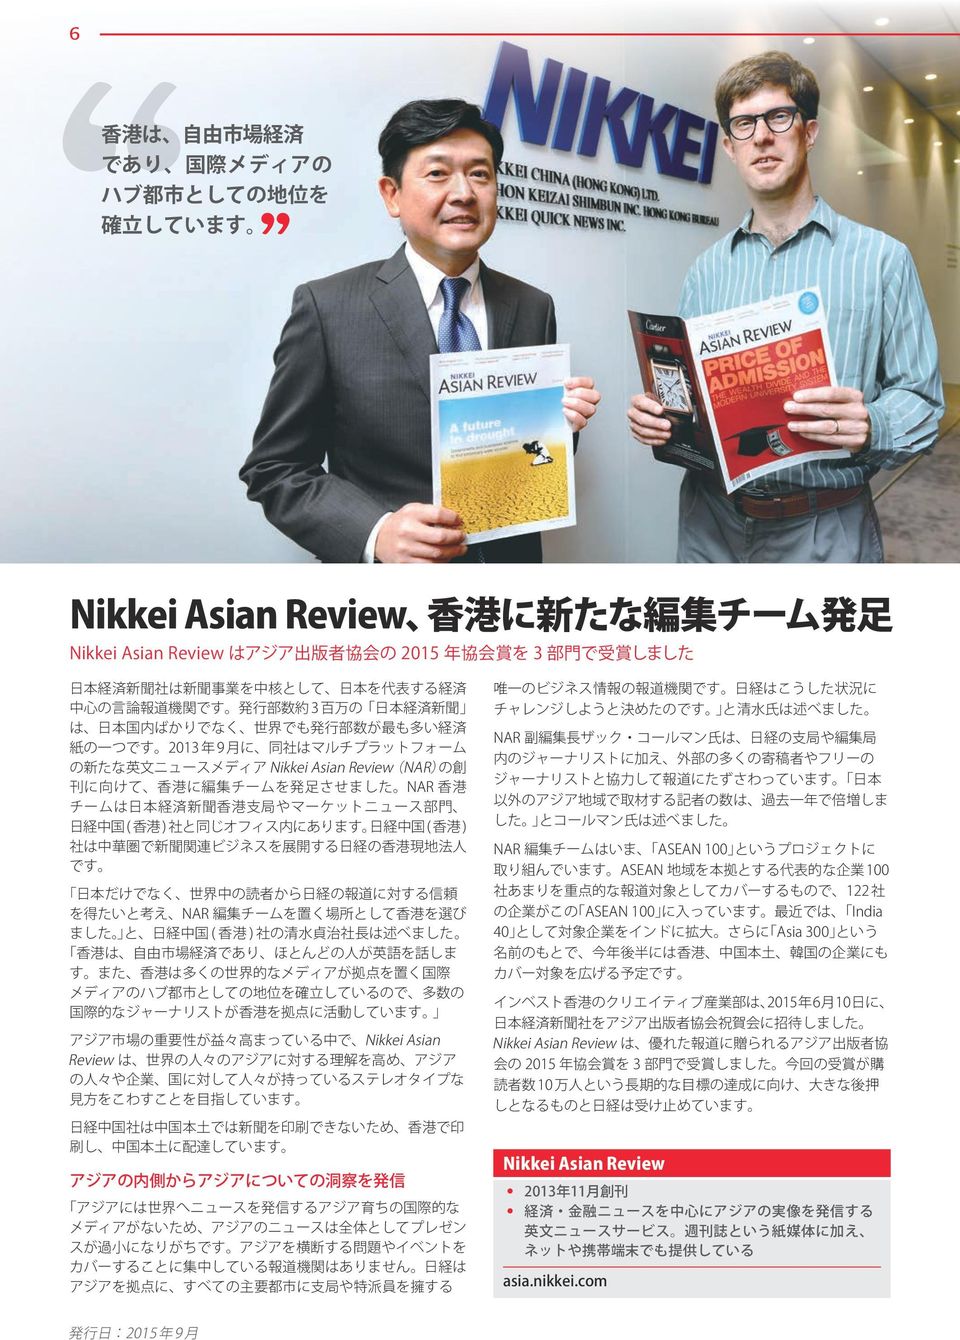 Review(NAR)の 創 刊 に 向 けて 香 港 に 編 集 チームを 発 足 させました NAR 香 港 チームは 日 本 経 済 新 聞 香 港 支 局 やマーケットニュース 部 門 日 経 中 国 ( 香 港 ) 社 と 同 じオフィス 内 にあります 日 経 中 国 ( 香 港 ) 社 は 中 華 圏 で 新 聞 関 連 ビジネスを 展 開 する 日 経 の 香 港 現 地 法 人